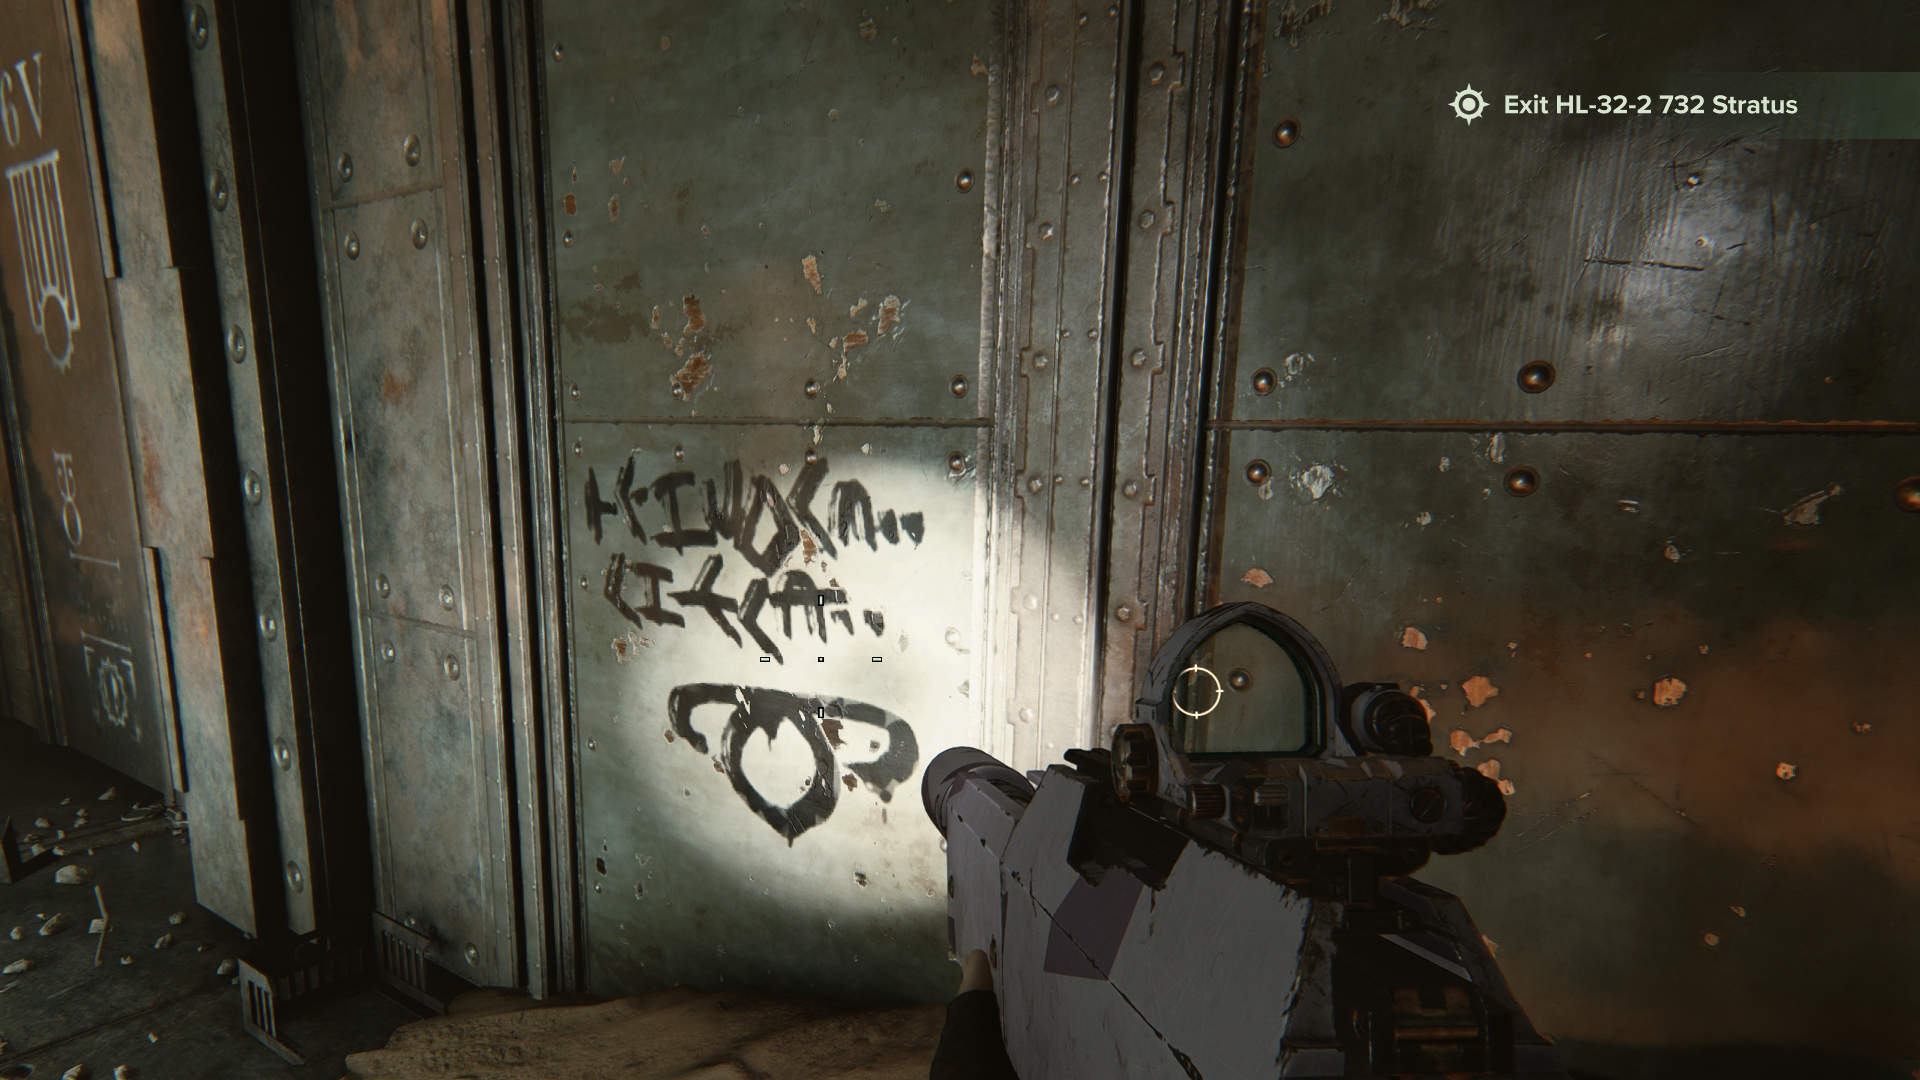 Darktide easter egg: graffiti that says 